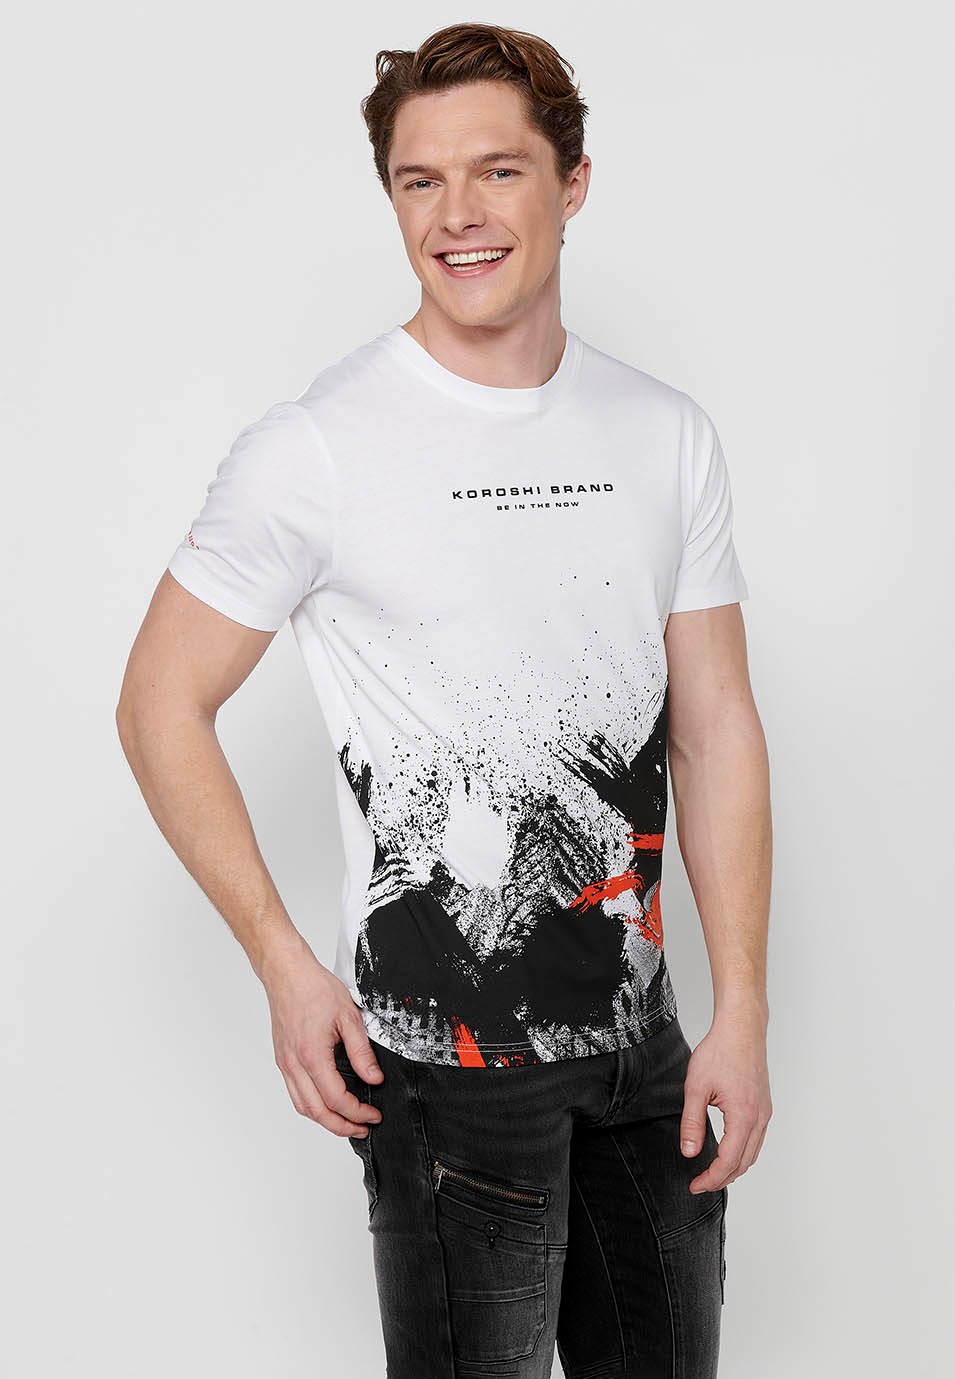 Camiseta de manga corta de algodon, .etampado delantero en degradado, color blanco para hombre